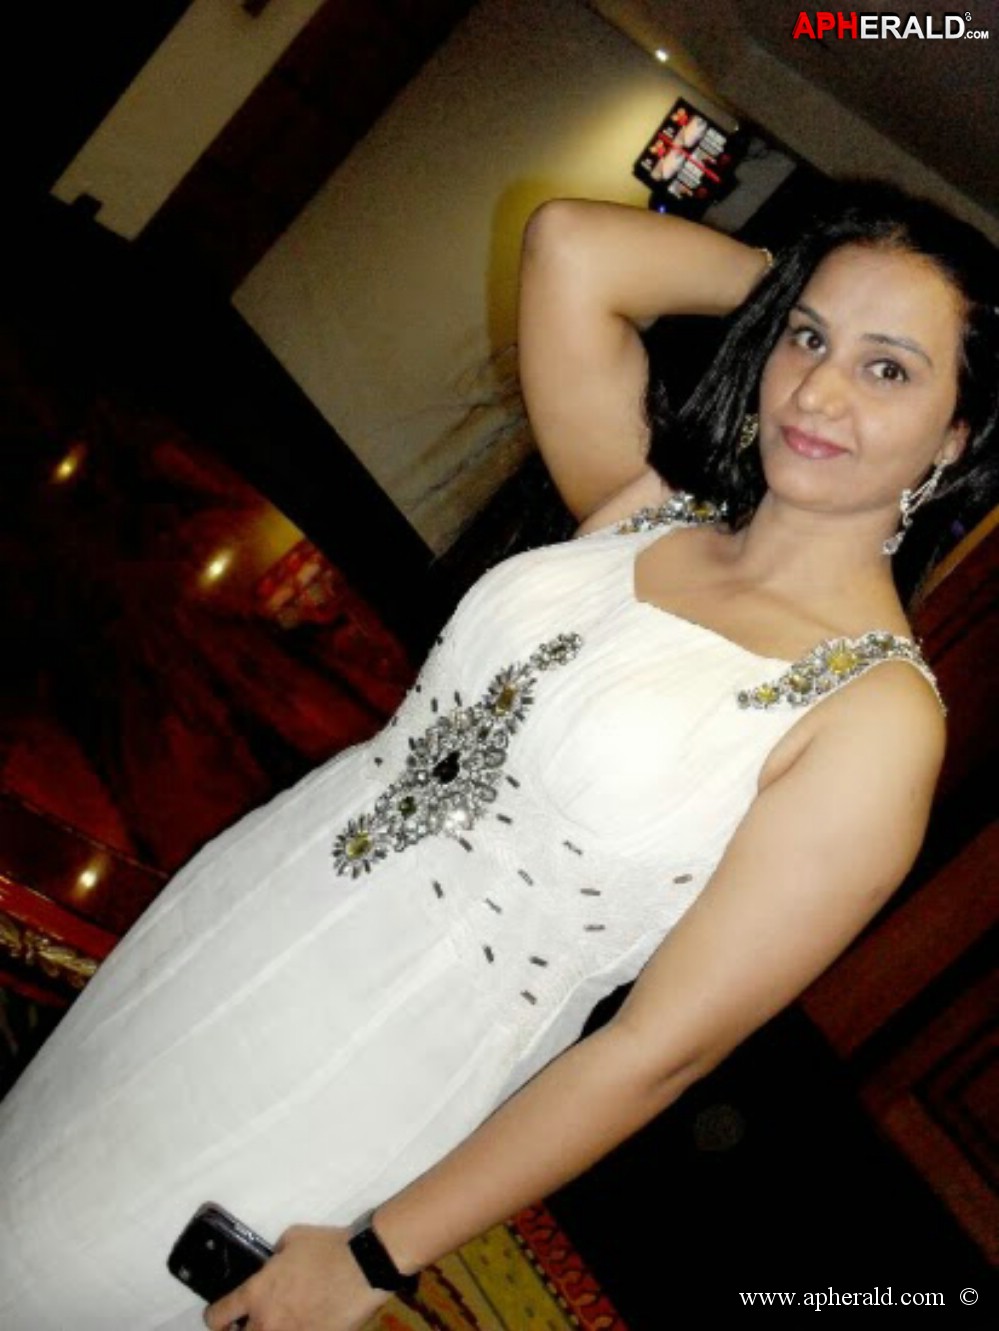 Telugu Actress Apoorva Hot Images